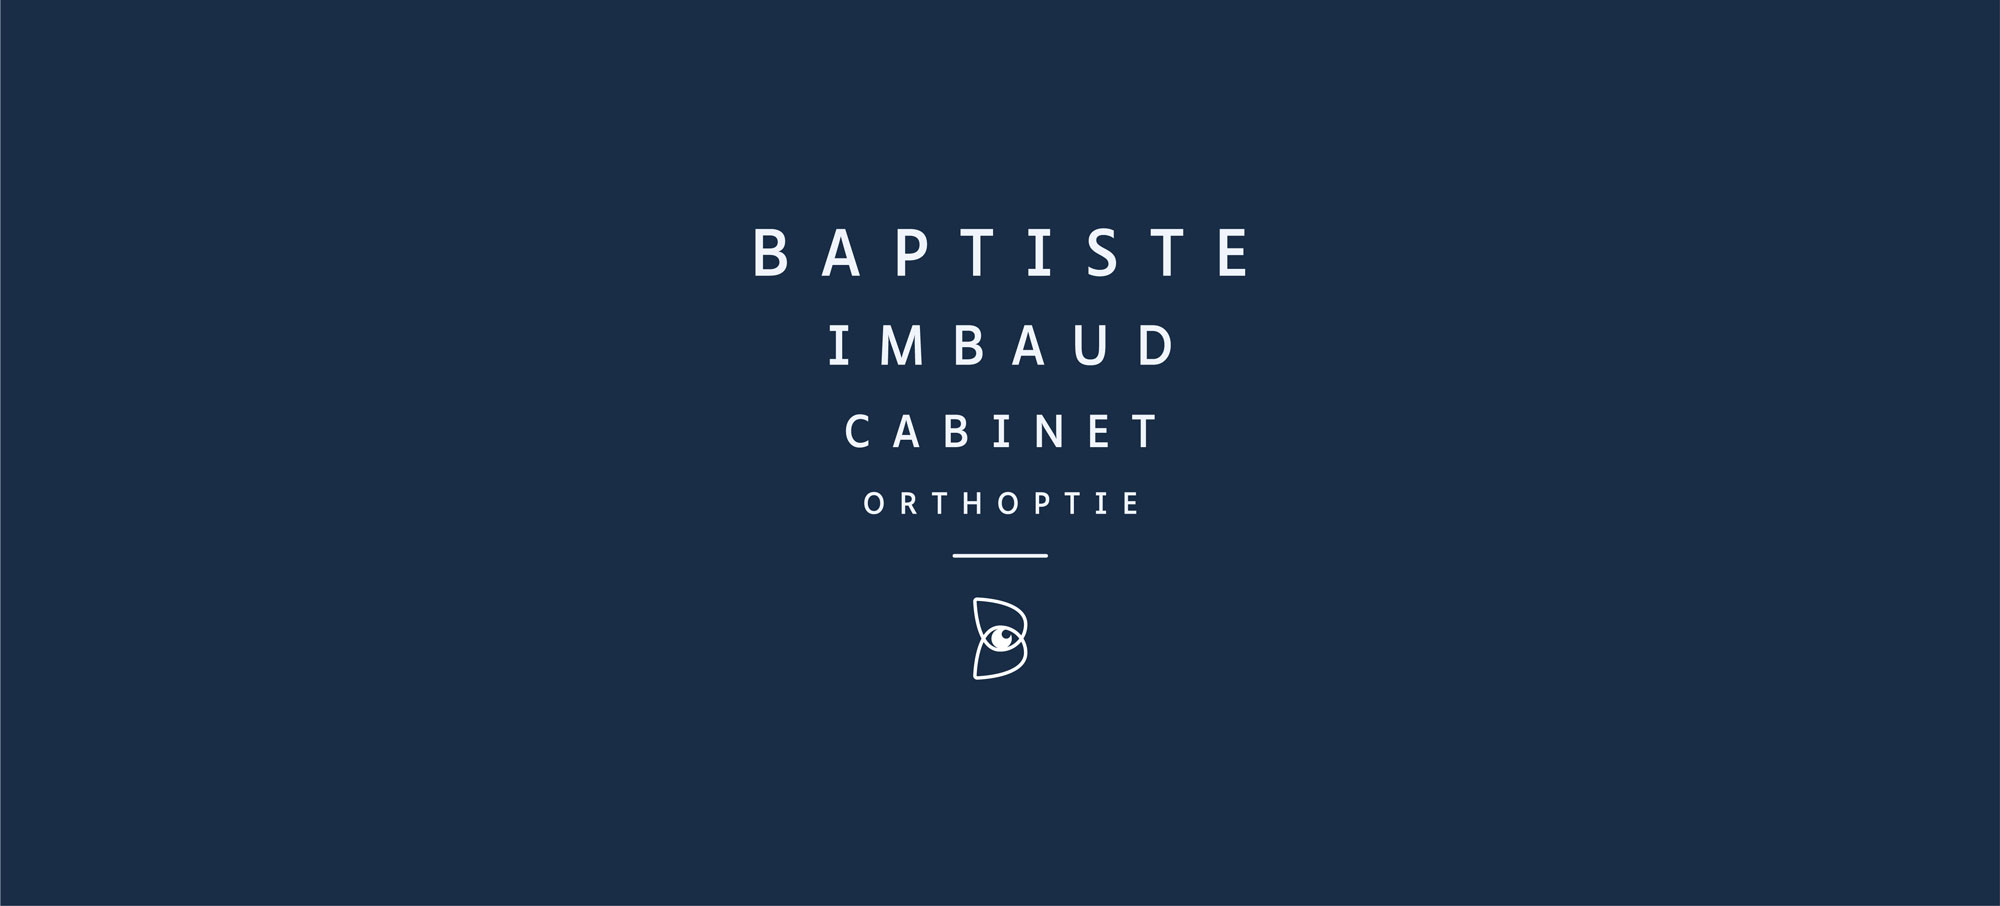 Logo Cabinet Orthoptie Baptiste Imbaud